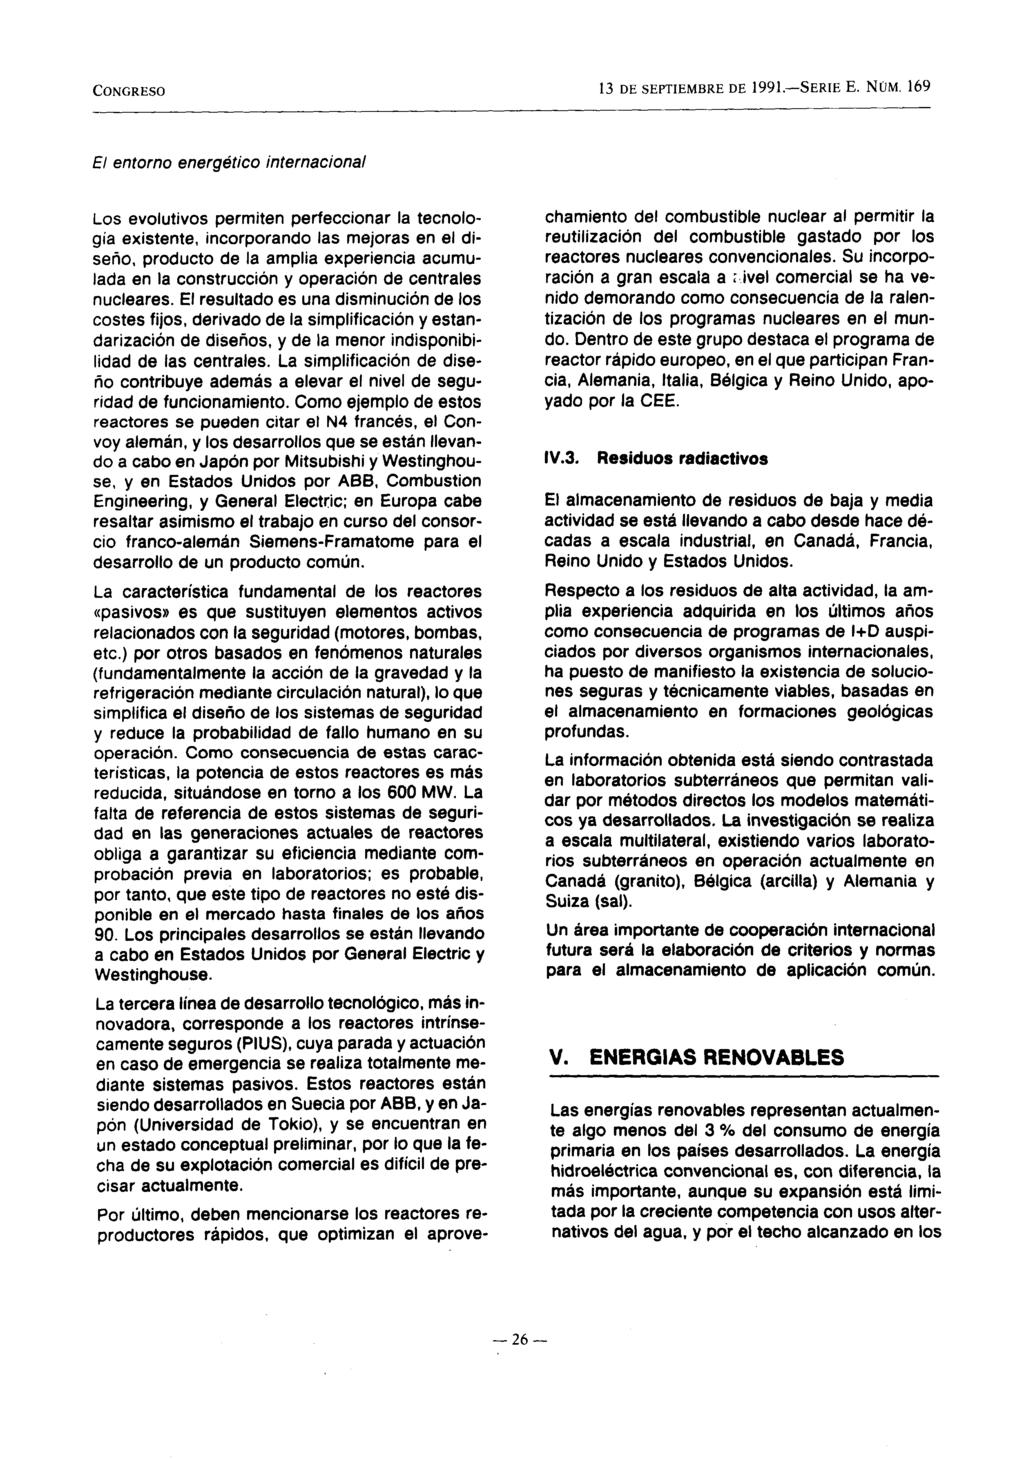 CONGRESO 13 DE SEPTIEMBRE DE 1991.-SERIE E. NÚM.